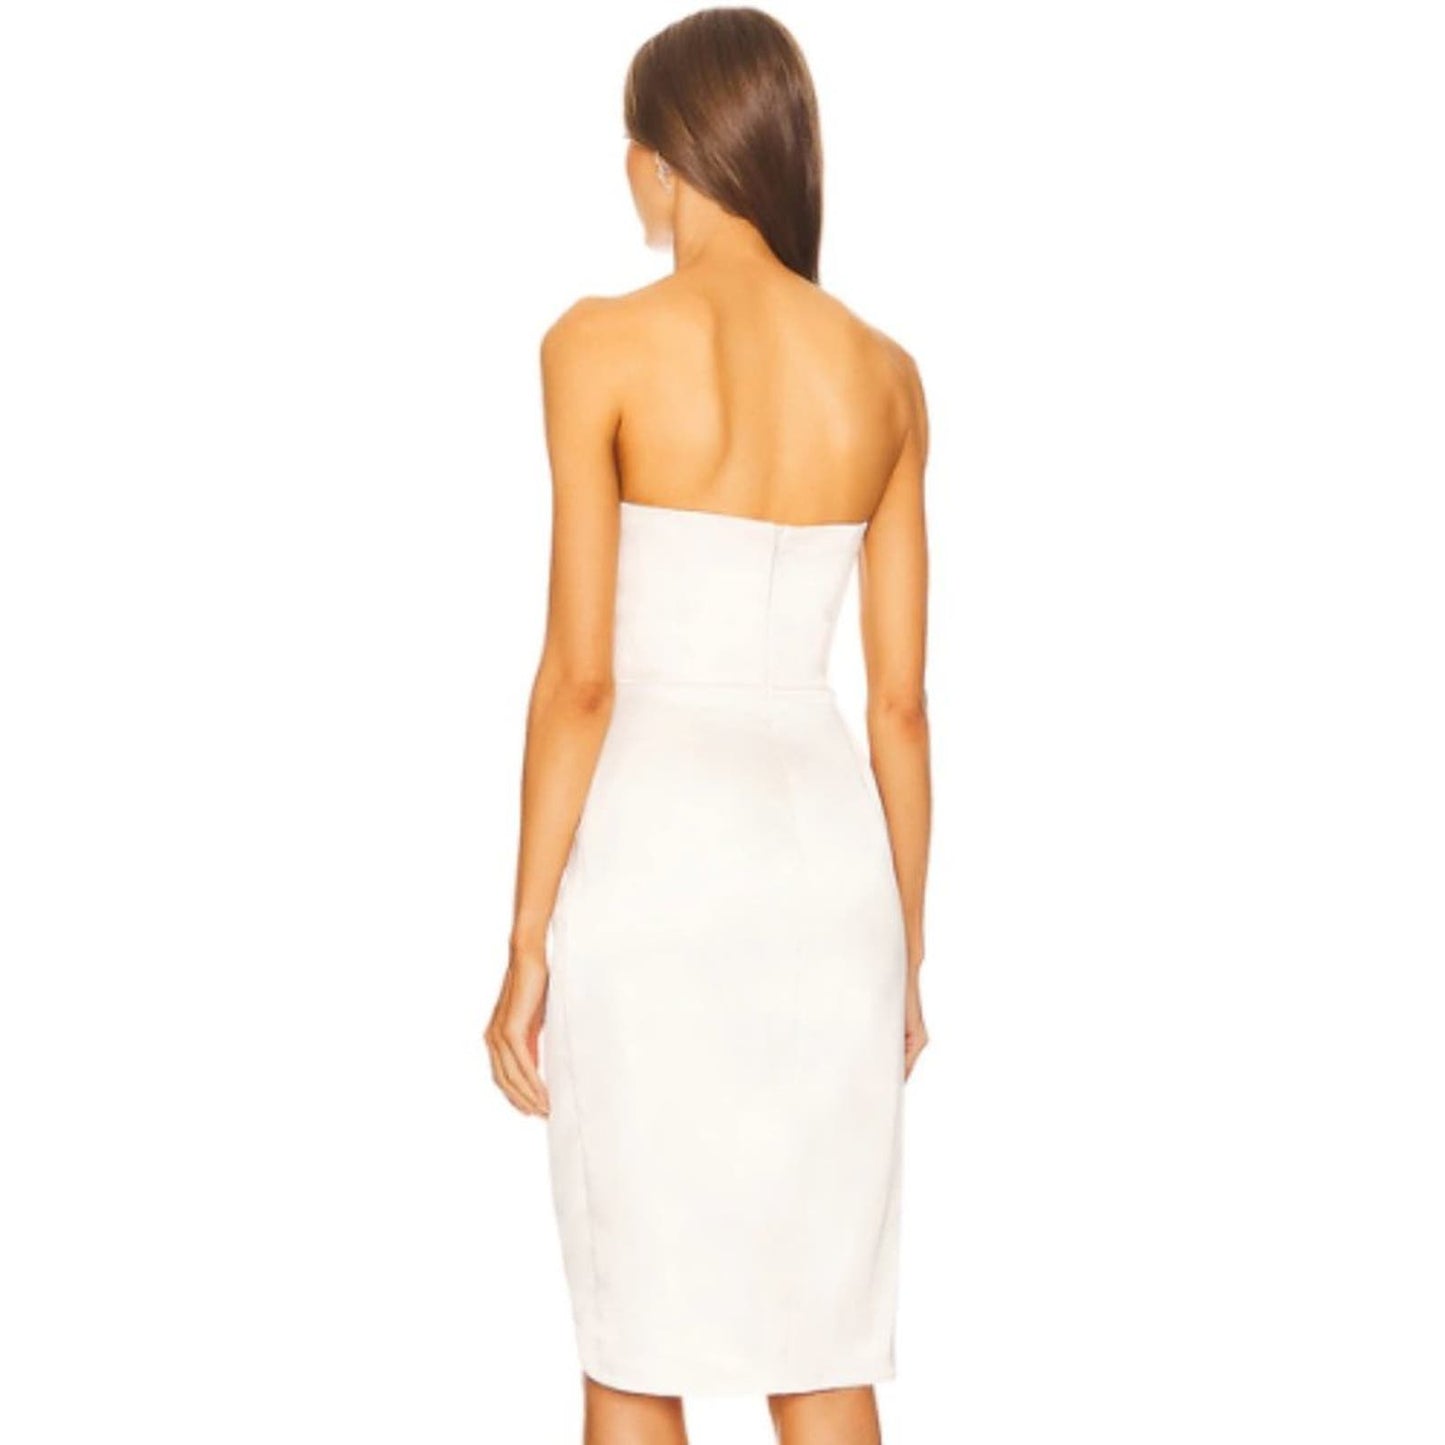 Michael Costello x REVOLVE Sara Midi Dress in White NWT Size Small